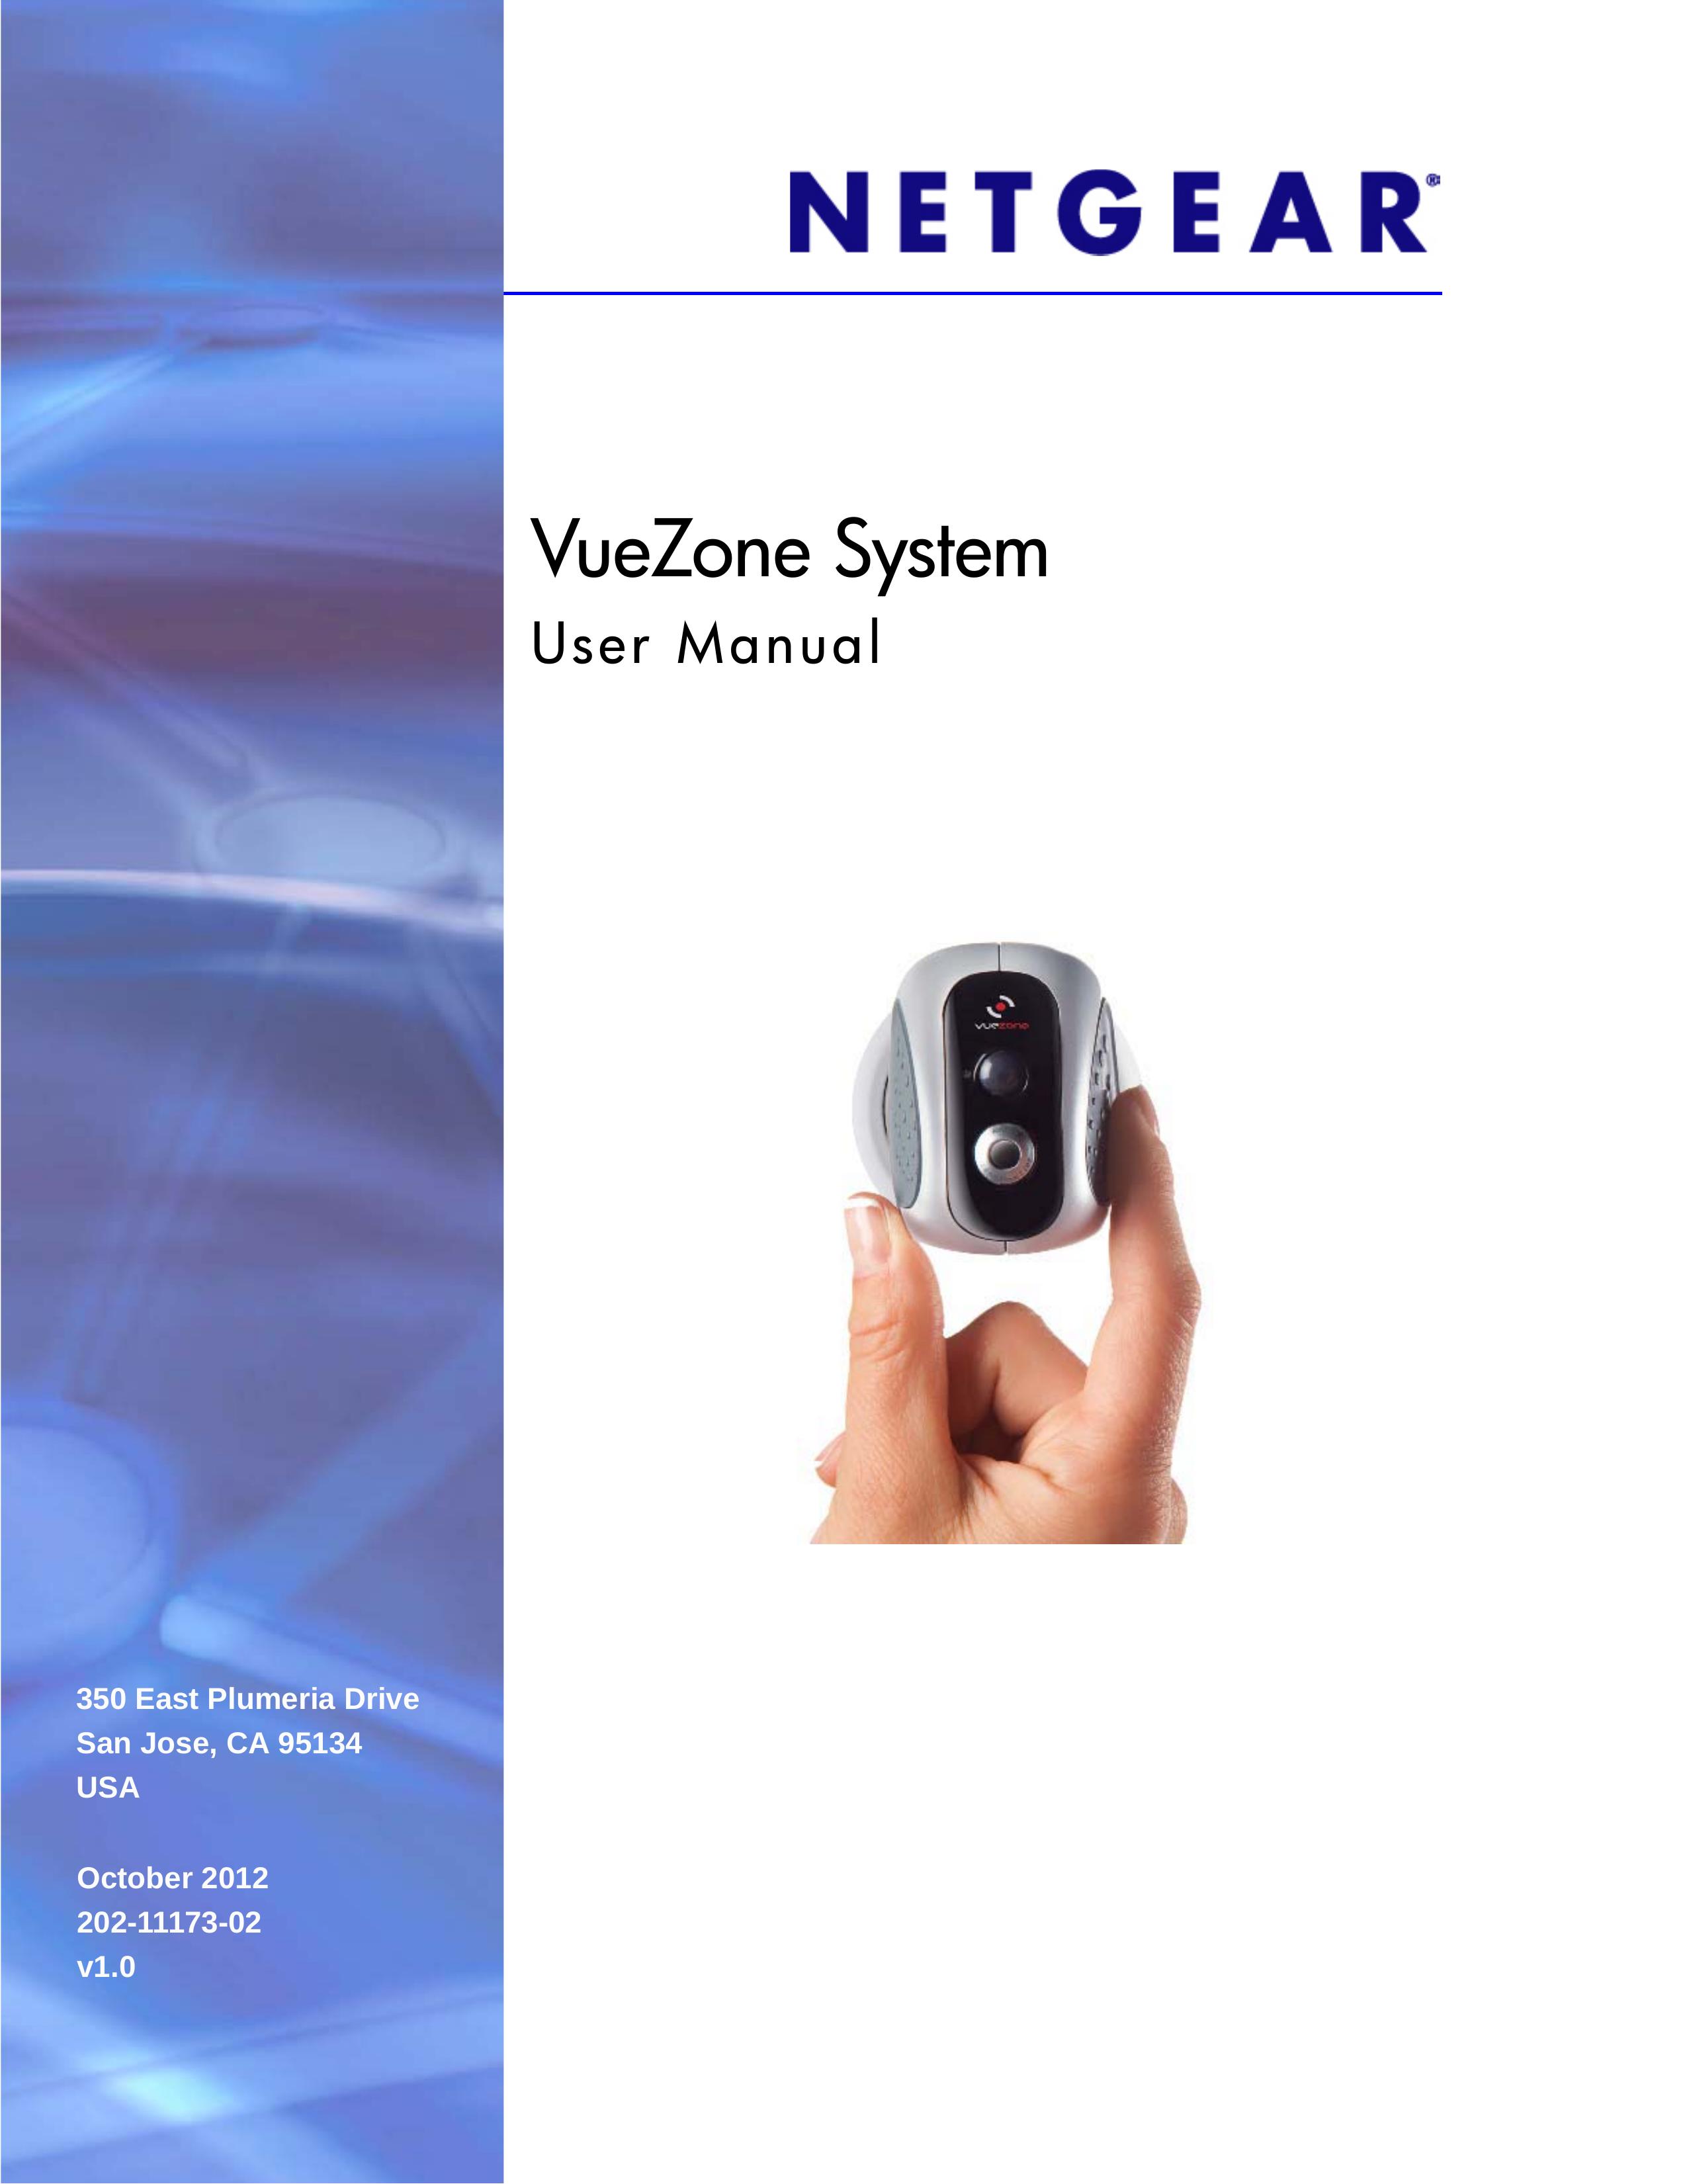 NETGEAR VZCM2050-100NAS Security Camera User Manual